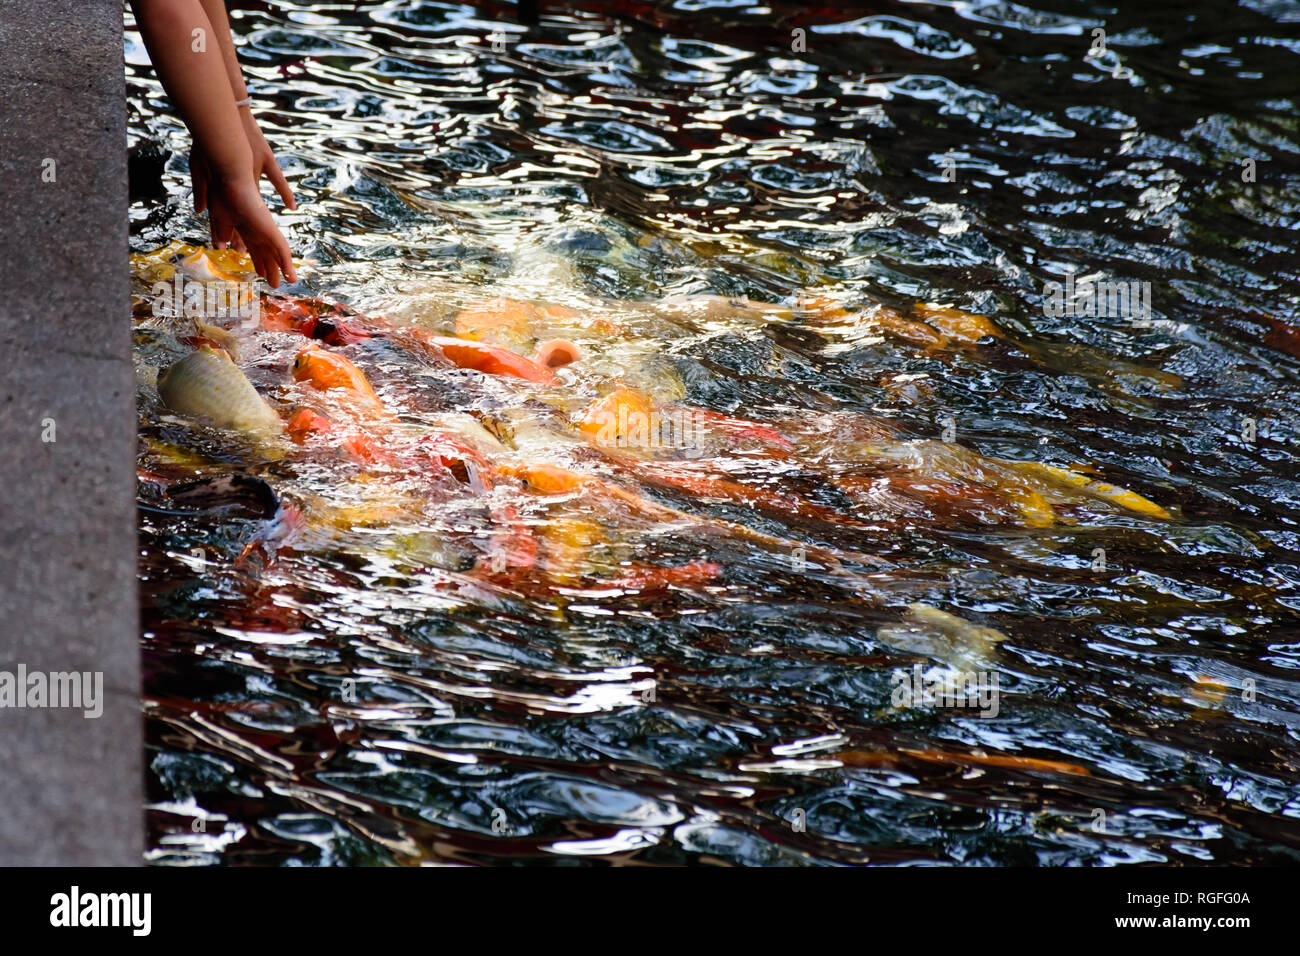 Fantaisie colorée ou poisson carpe koi de poissons nagent. Koi de poissons nager dans l'étang. Vue de dessus et effectuer un zoom avant pour fermer le haut. L'eau est claire et noire reflecti Banque D'Images